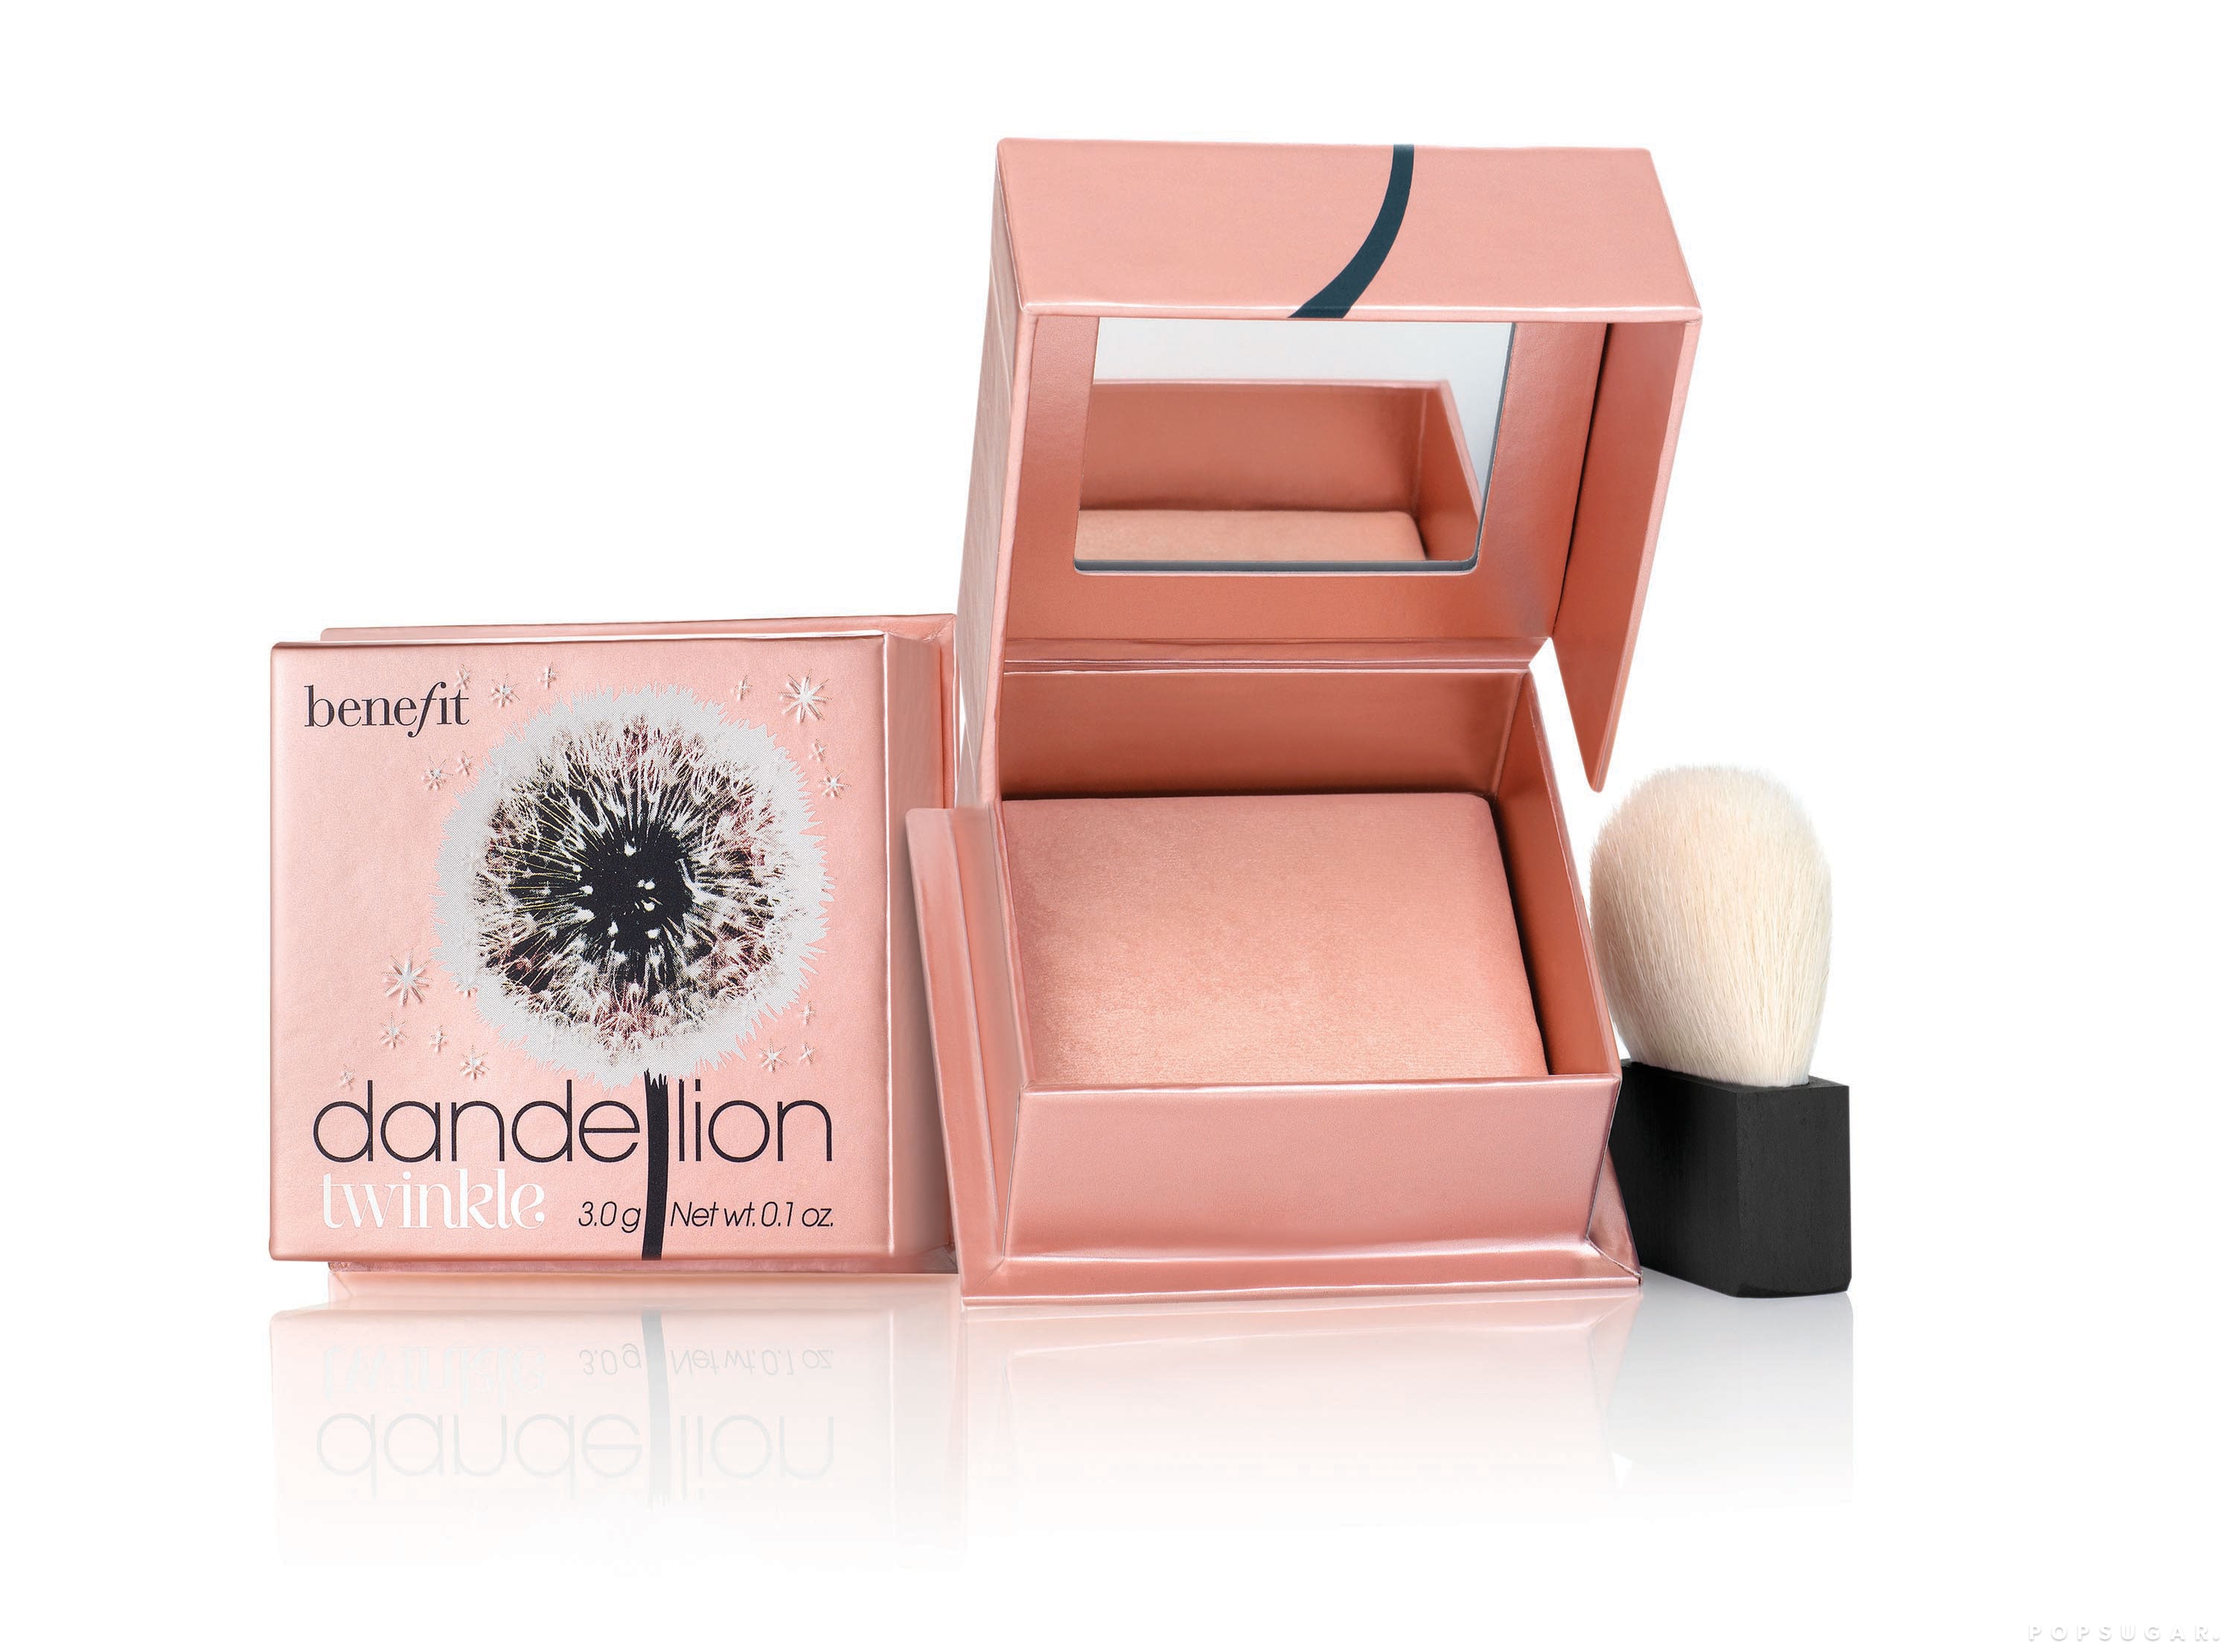 Dandelion Baby-Pink Blush Power, Makeup, Benefit